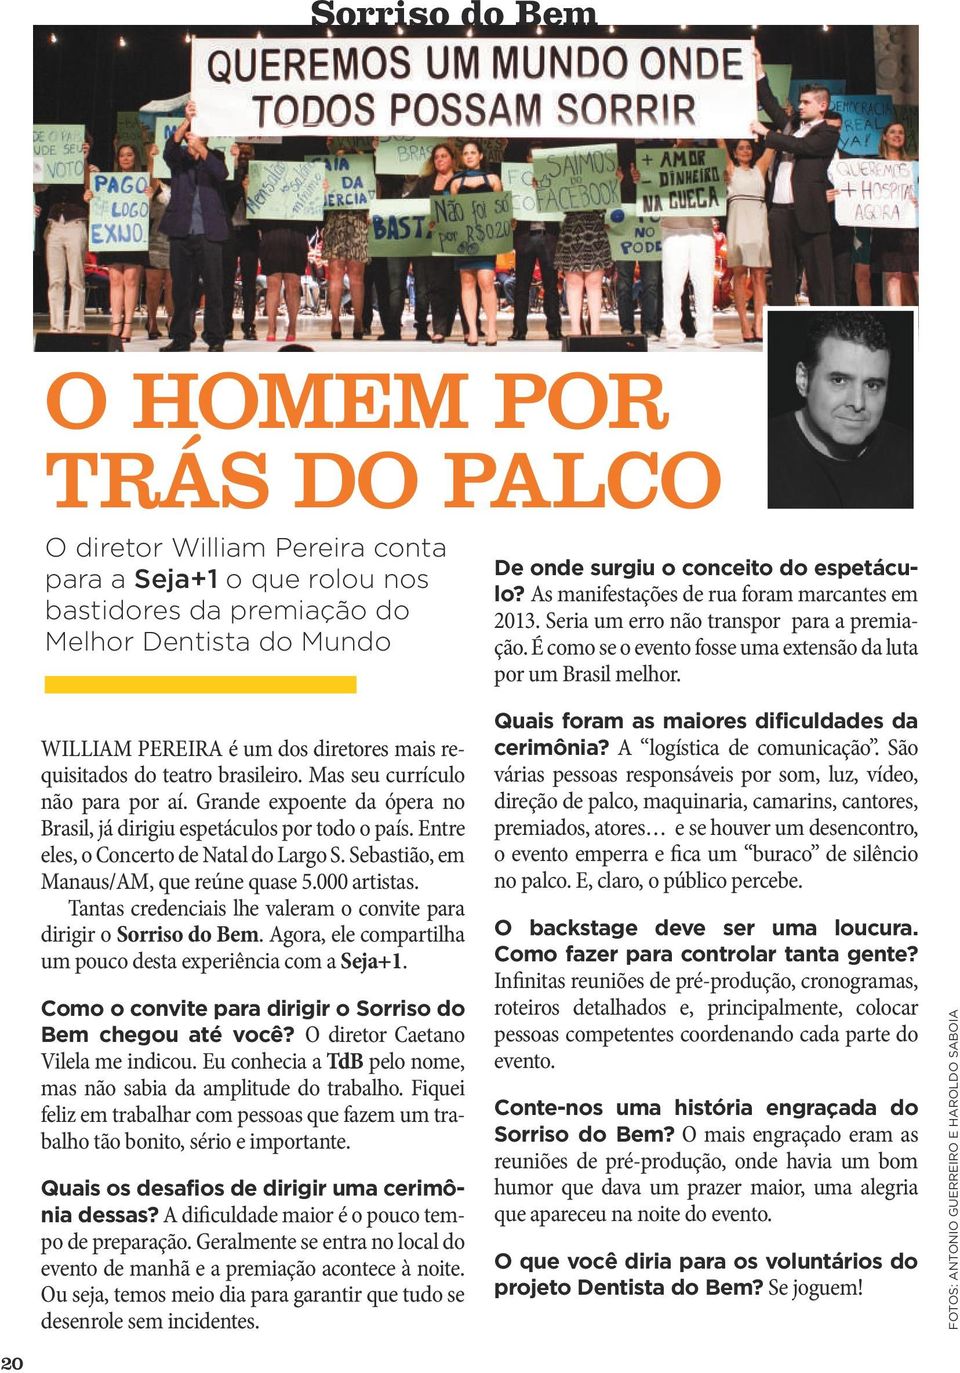 WILLIAM PEREIRA é um dos diretores mais requisitados do teatro brasileiro. Mas seu currículo não para por aí. Grande expoente da ópera no Brasil, já dirigiu espetáculos por todo o país.